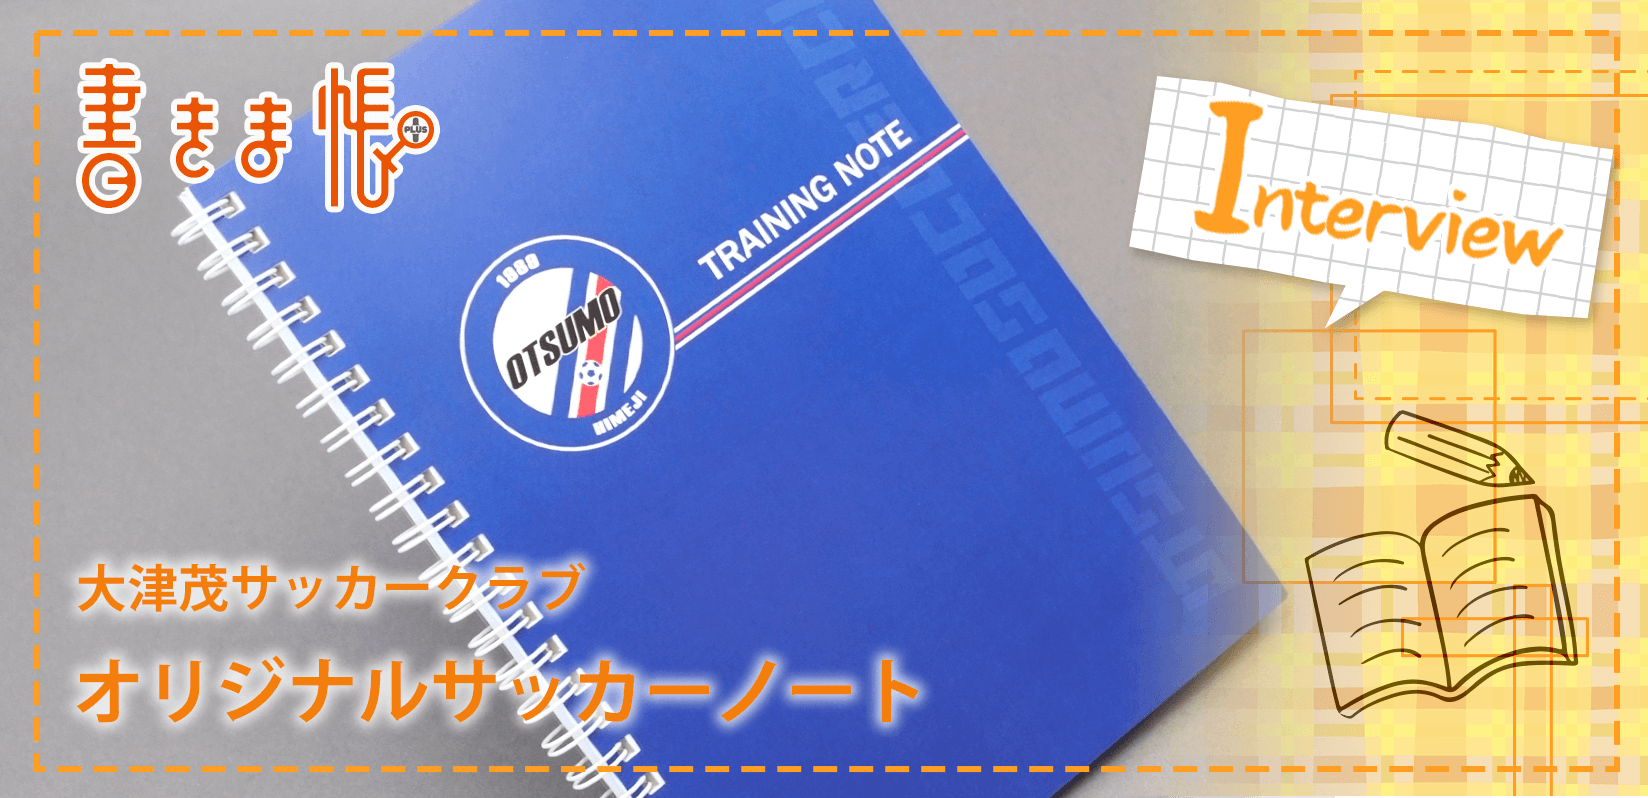 大津茂サッカークラブ様製作のオリジナルノート「オリジナルサッカーノート」